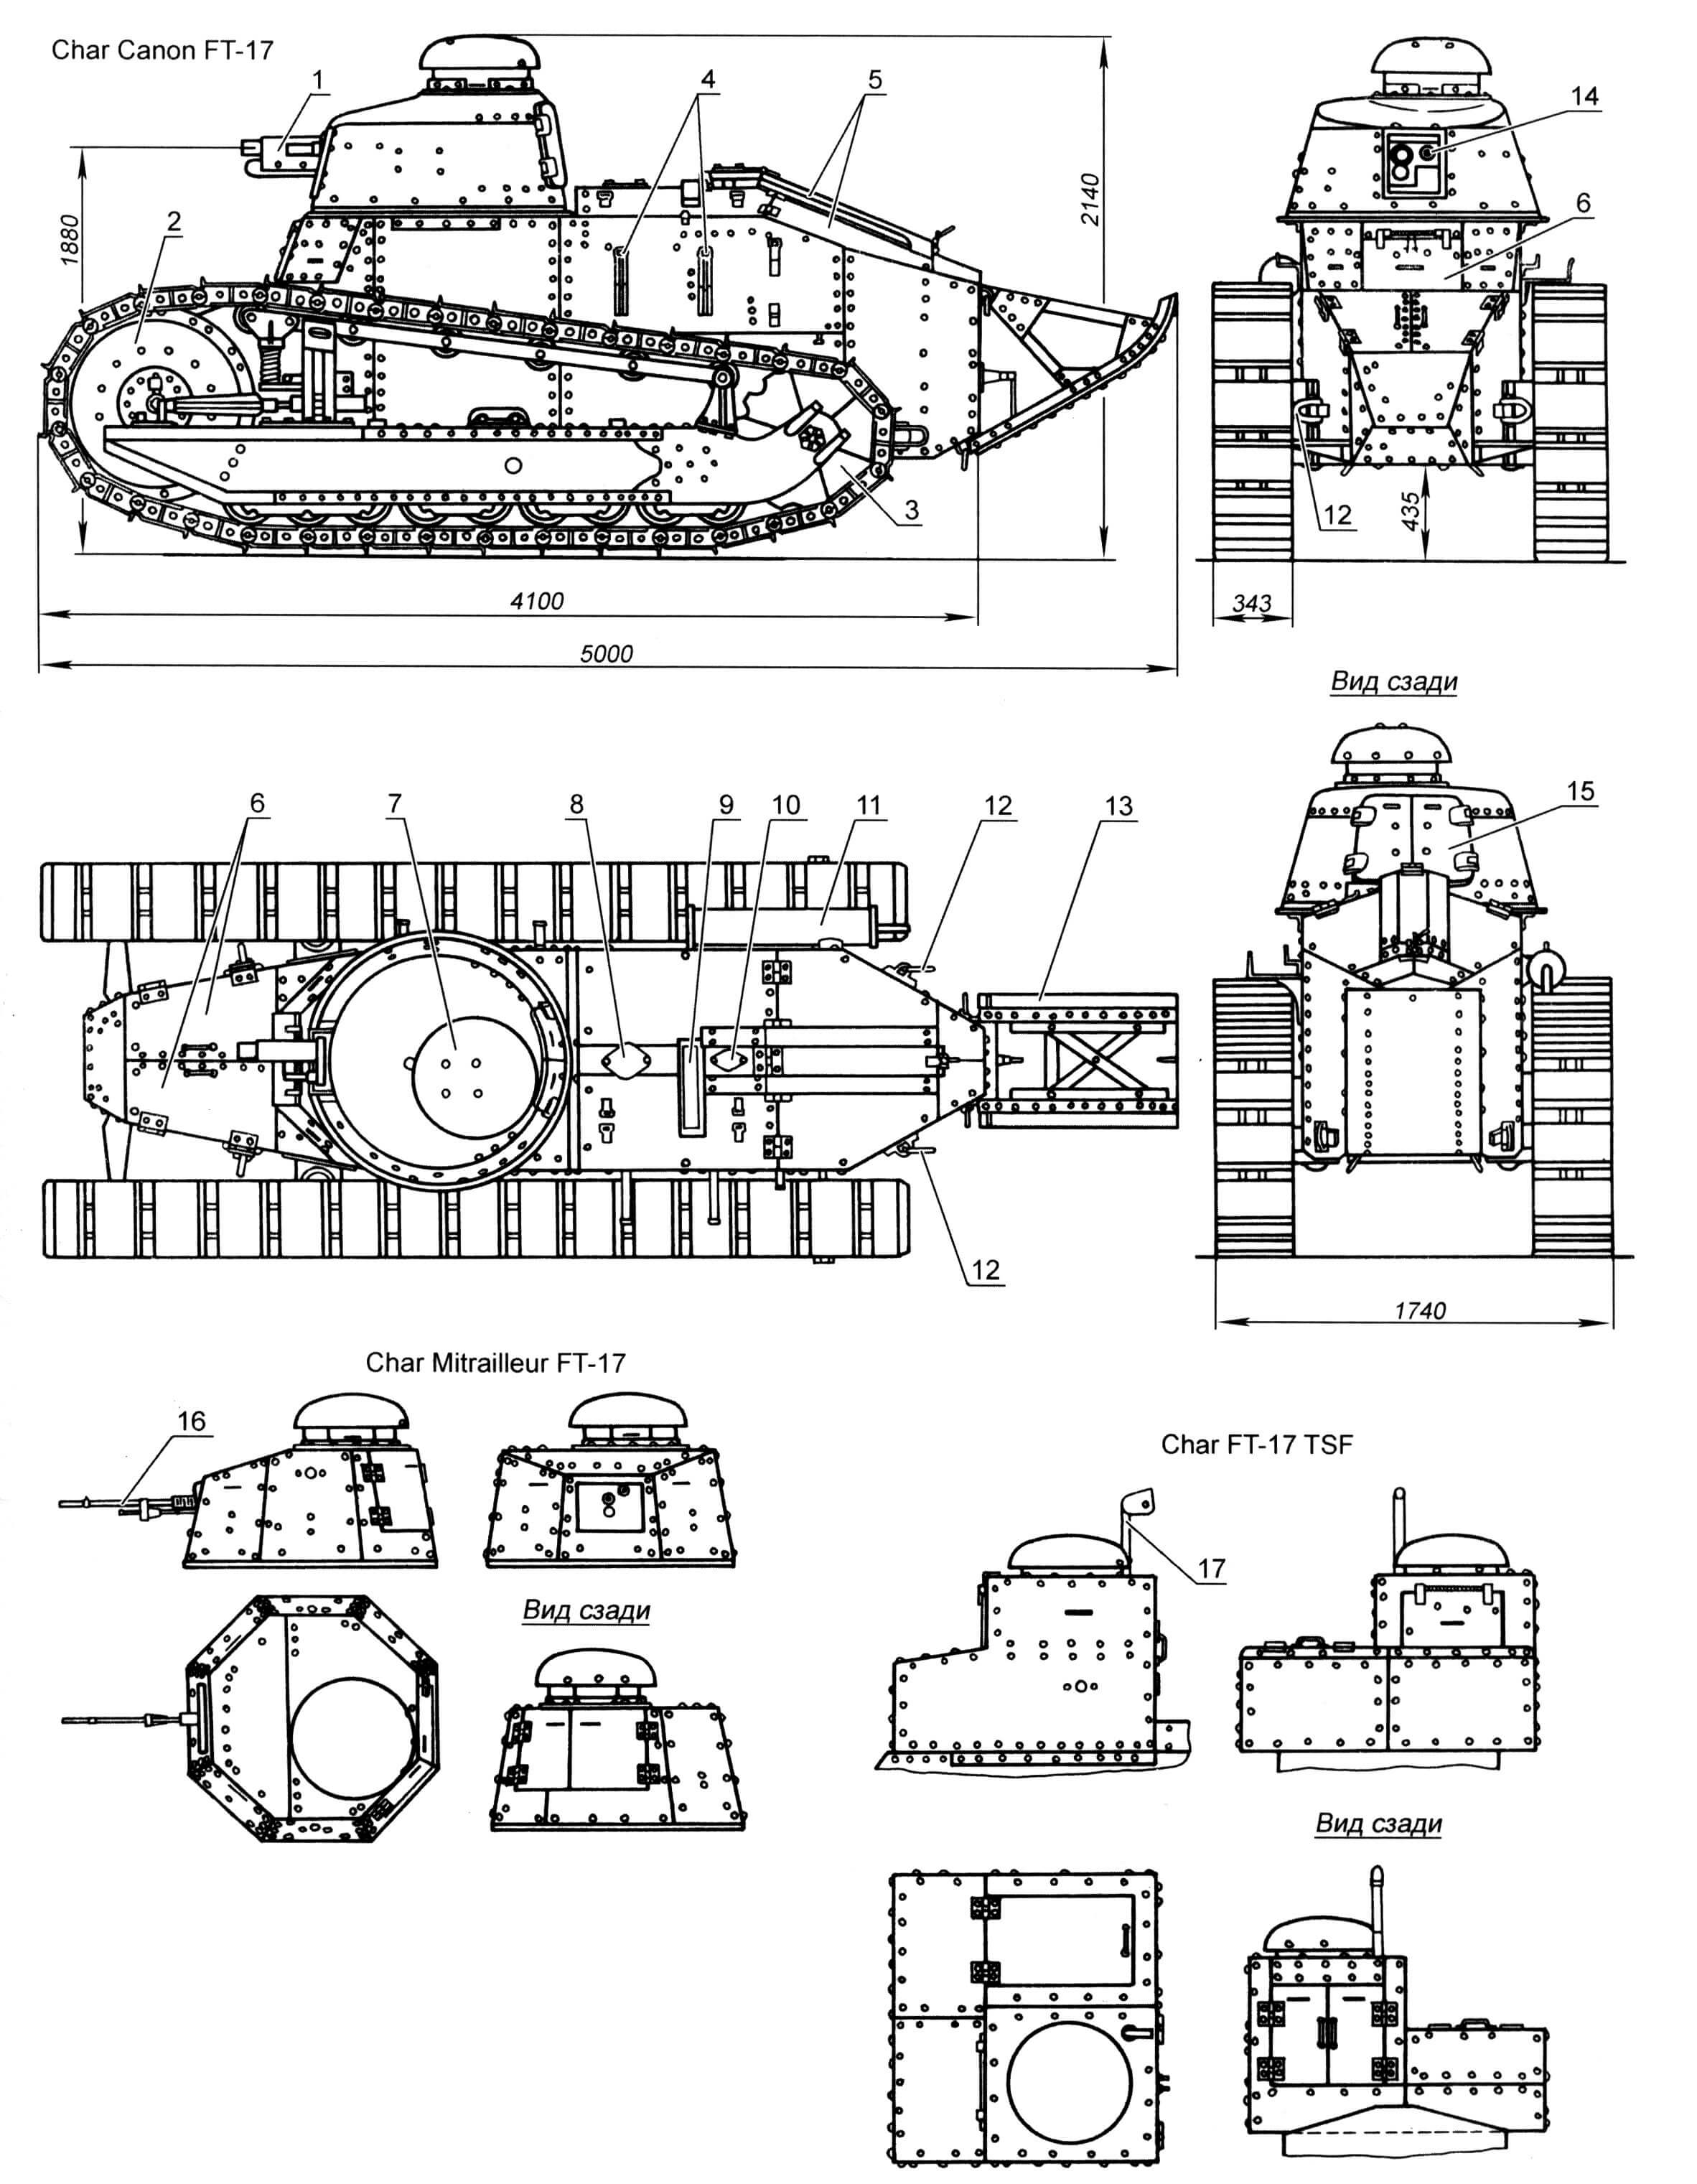 Легкий танк «Рено» FT-17: 1 - 37-мм пушка; 2 - направляющее колесо; 3 - ведущее колесо; 4 - кронштейны крепления ящика ЗИП; 5 - крышки МТО; 6 - входные люки; 7 - откидной колпак командирской башенки; 8 - крышка горловины топливного бака; 9 - окно вентилятора; 10 - крышка горловины радиатора; 11 - глушитель; 12 - буксирные серьги; 13 - «хвост»; 14 - окно прицела; 15 - запасной выходной люк; 16 - 8-мм пулемет Гочкиса; 17 - кронштейн крепления антенны